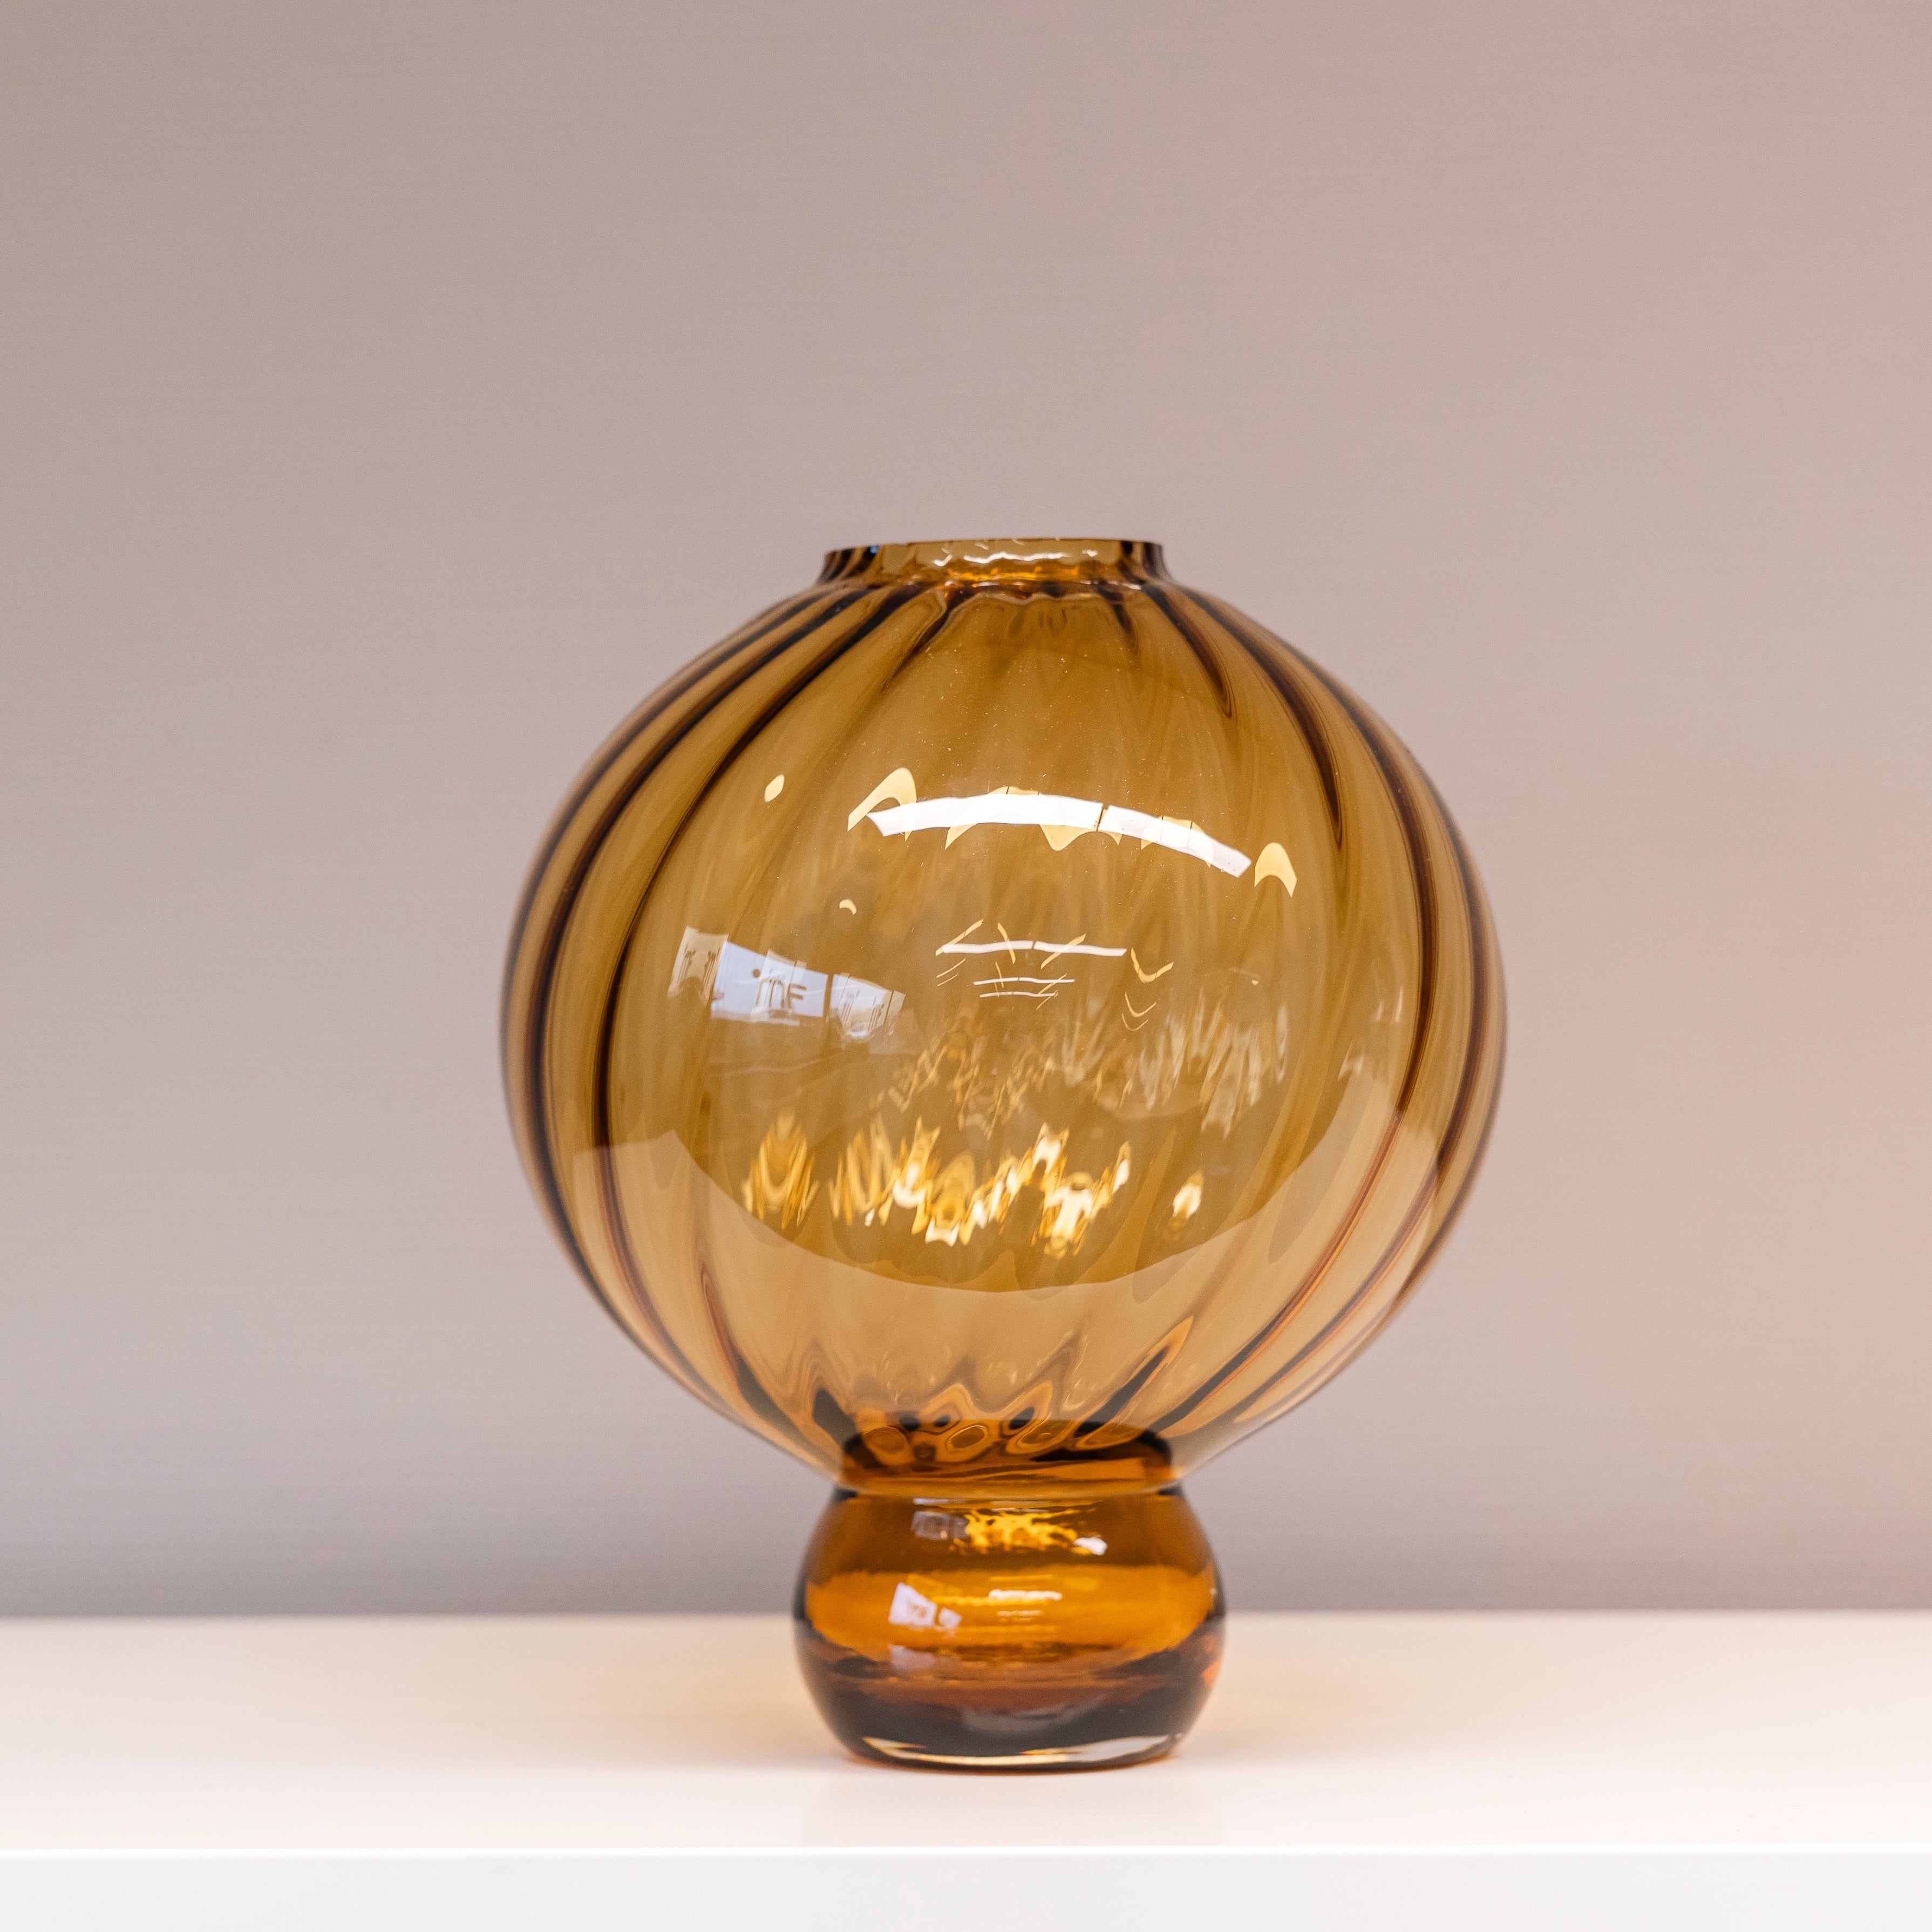 Vase on leg van het merk Fridio. Met de hand geblazen glazen vaas in afmeting 35 x 30.